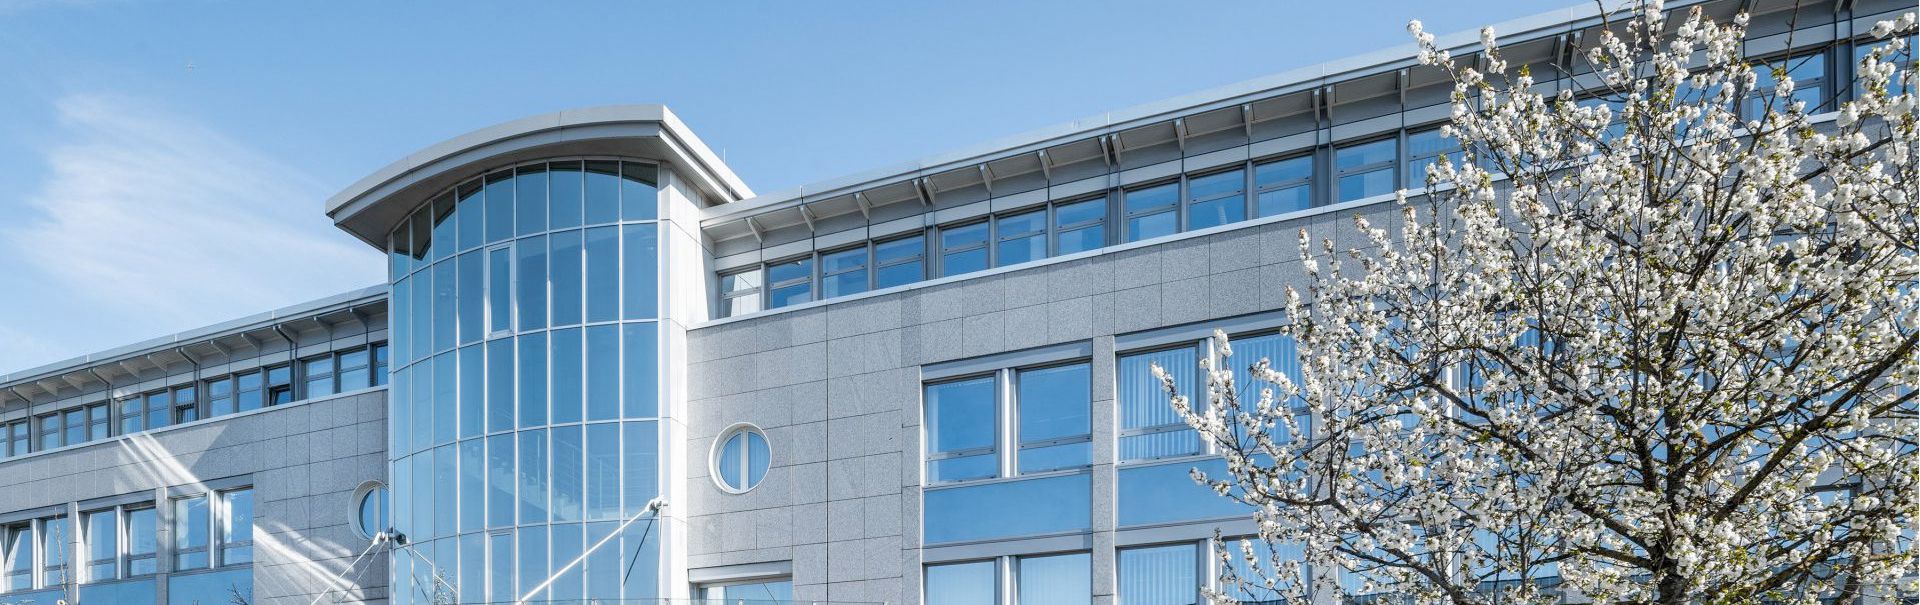 DIBAG – Unternehmenssitz in München, Bauträger, Projektentwicklung und Vermietung